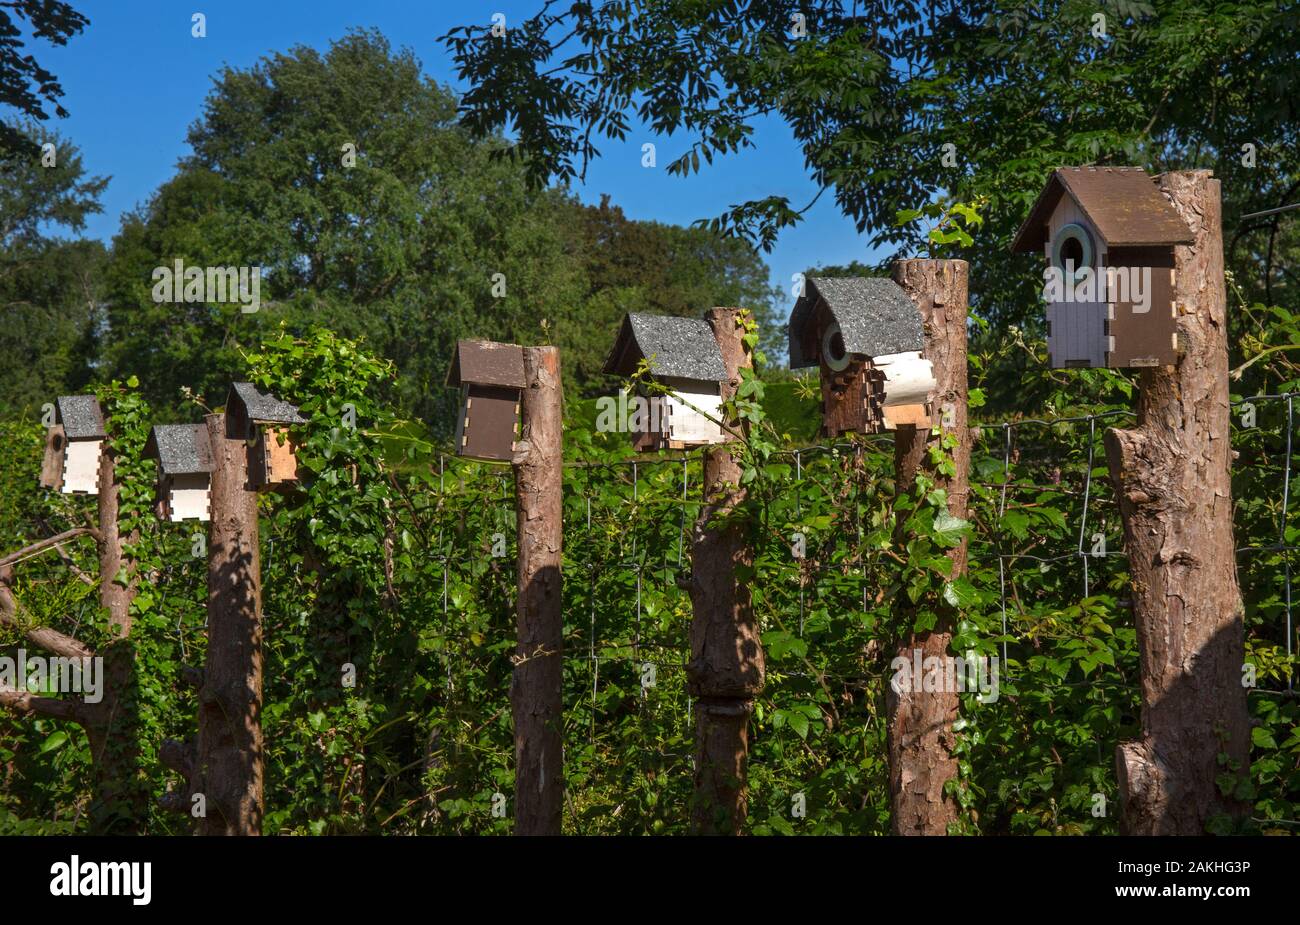 Ligne de boîtes d'oiseaux en bois dans le jardin anglais, Angleterre Banque D'Images